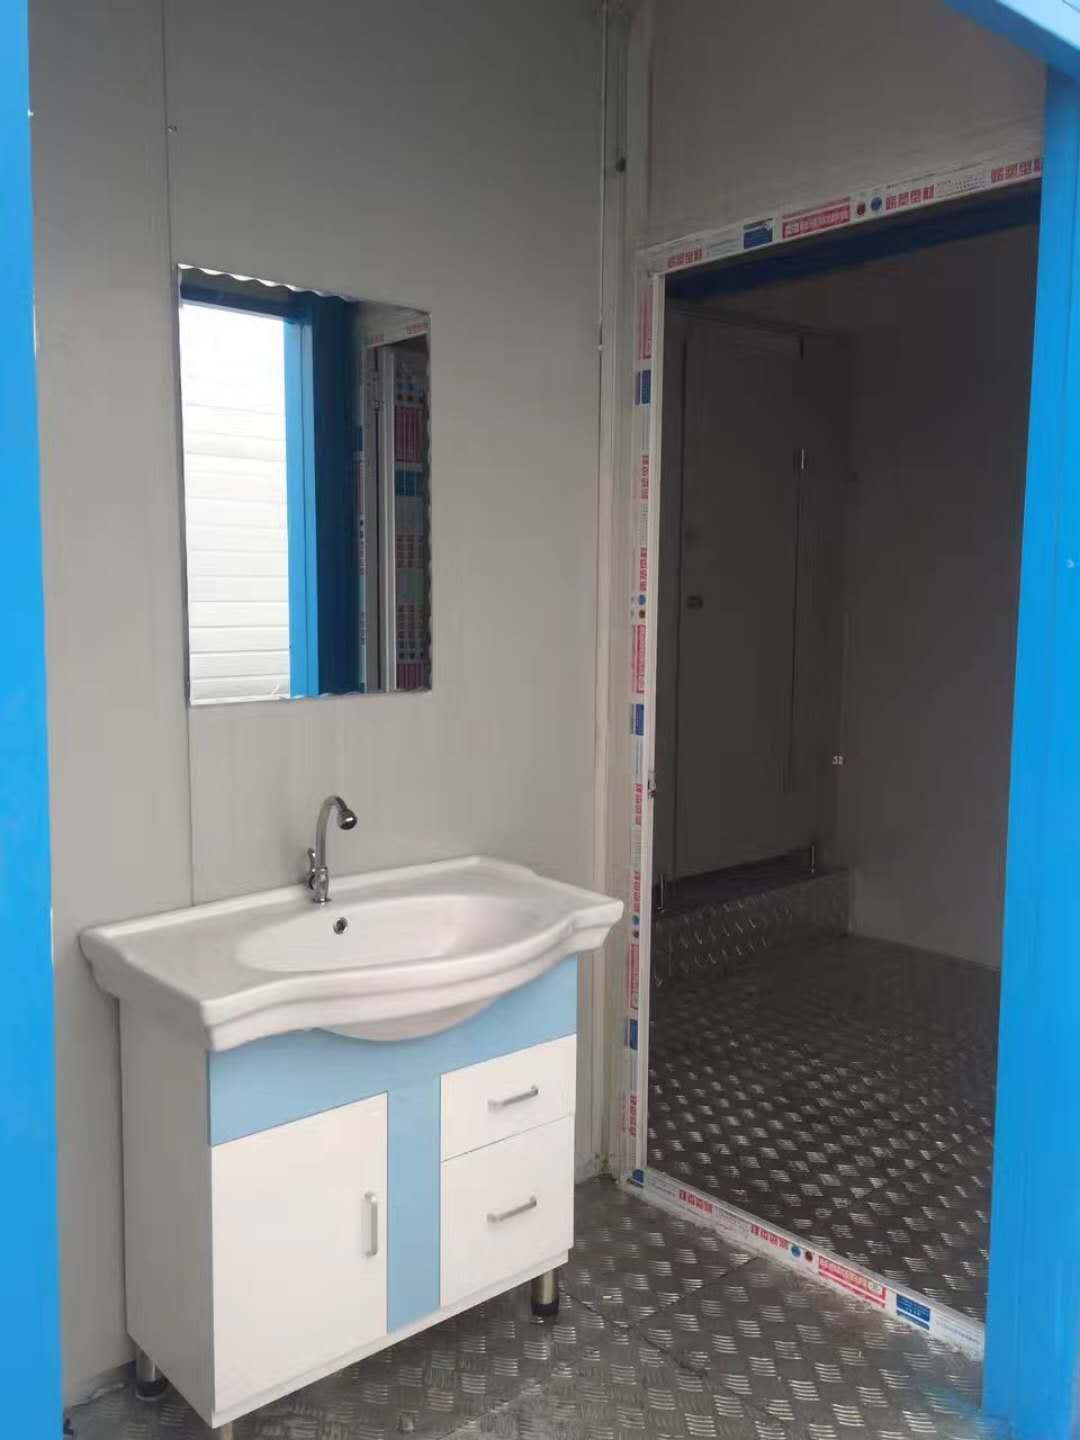 集装箱移动厕所